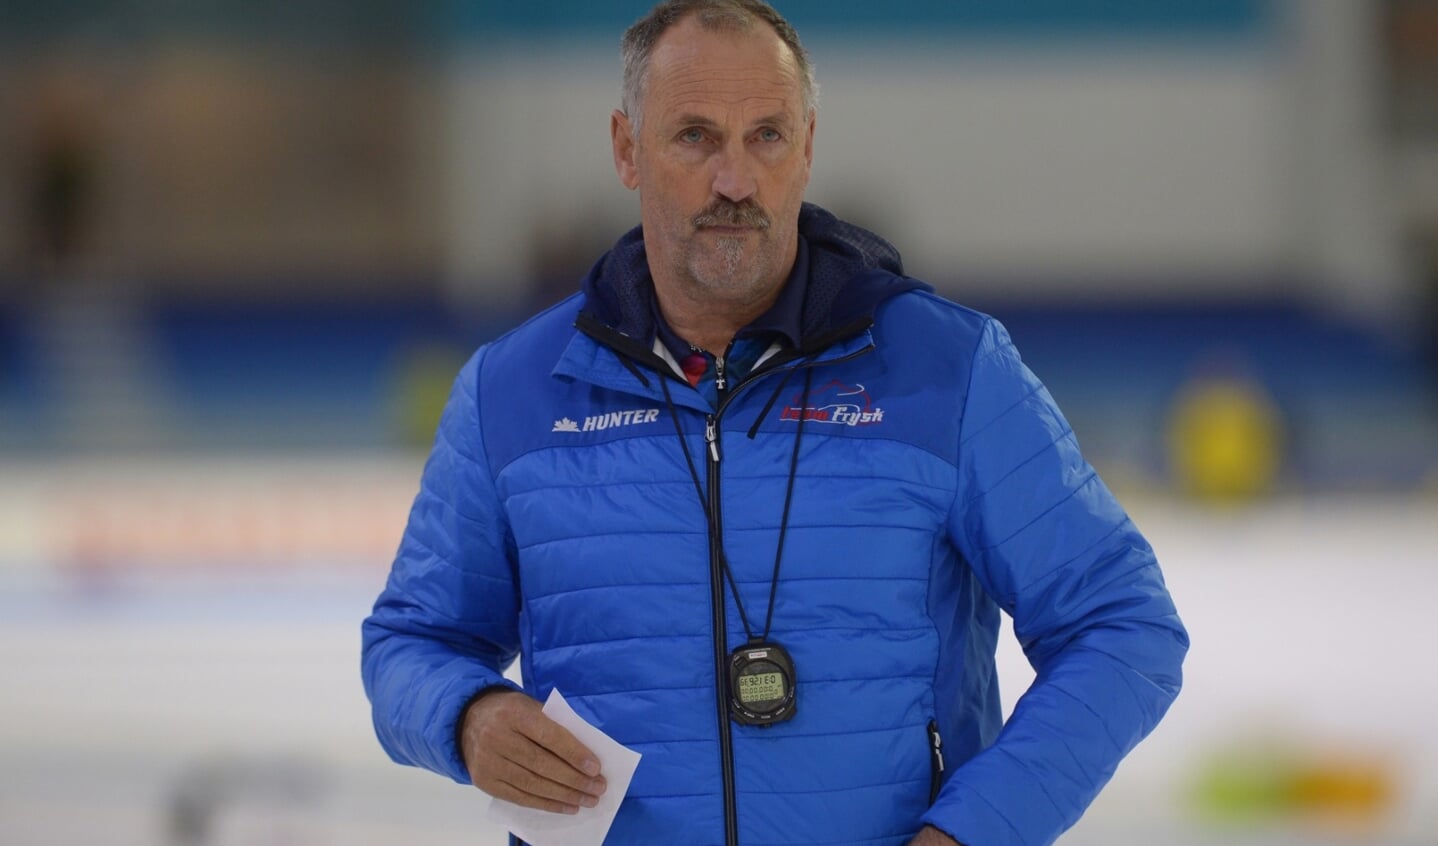 Trainer Siep Hoekstra